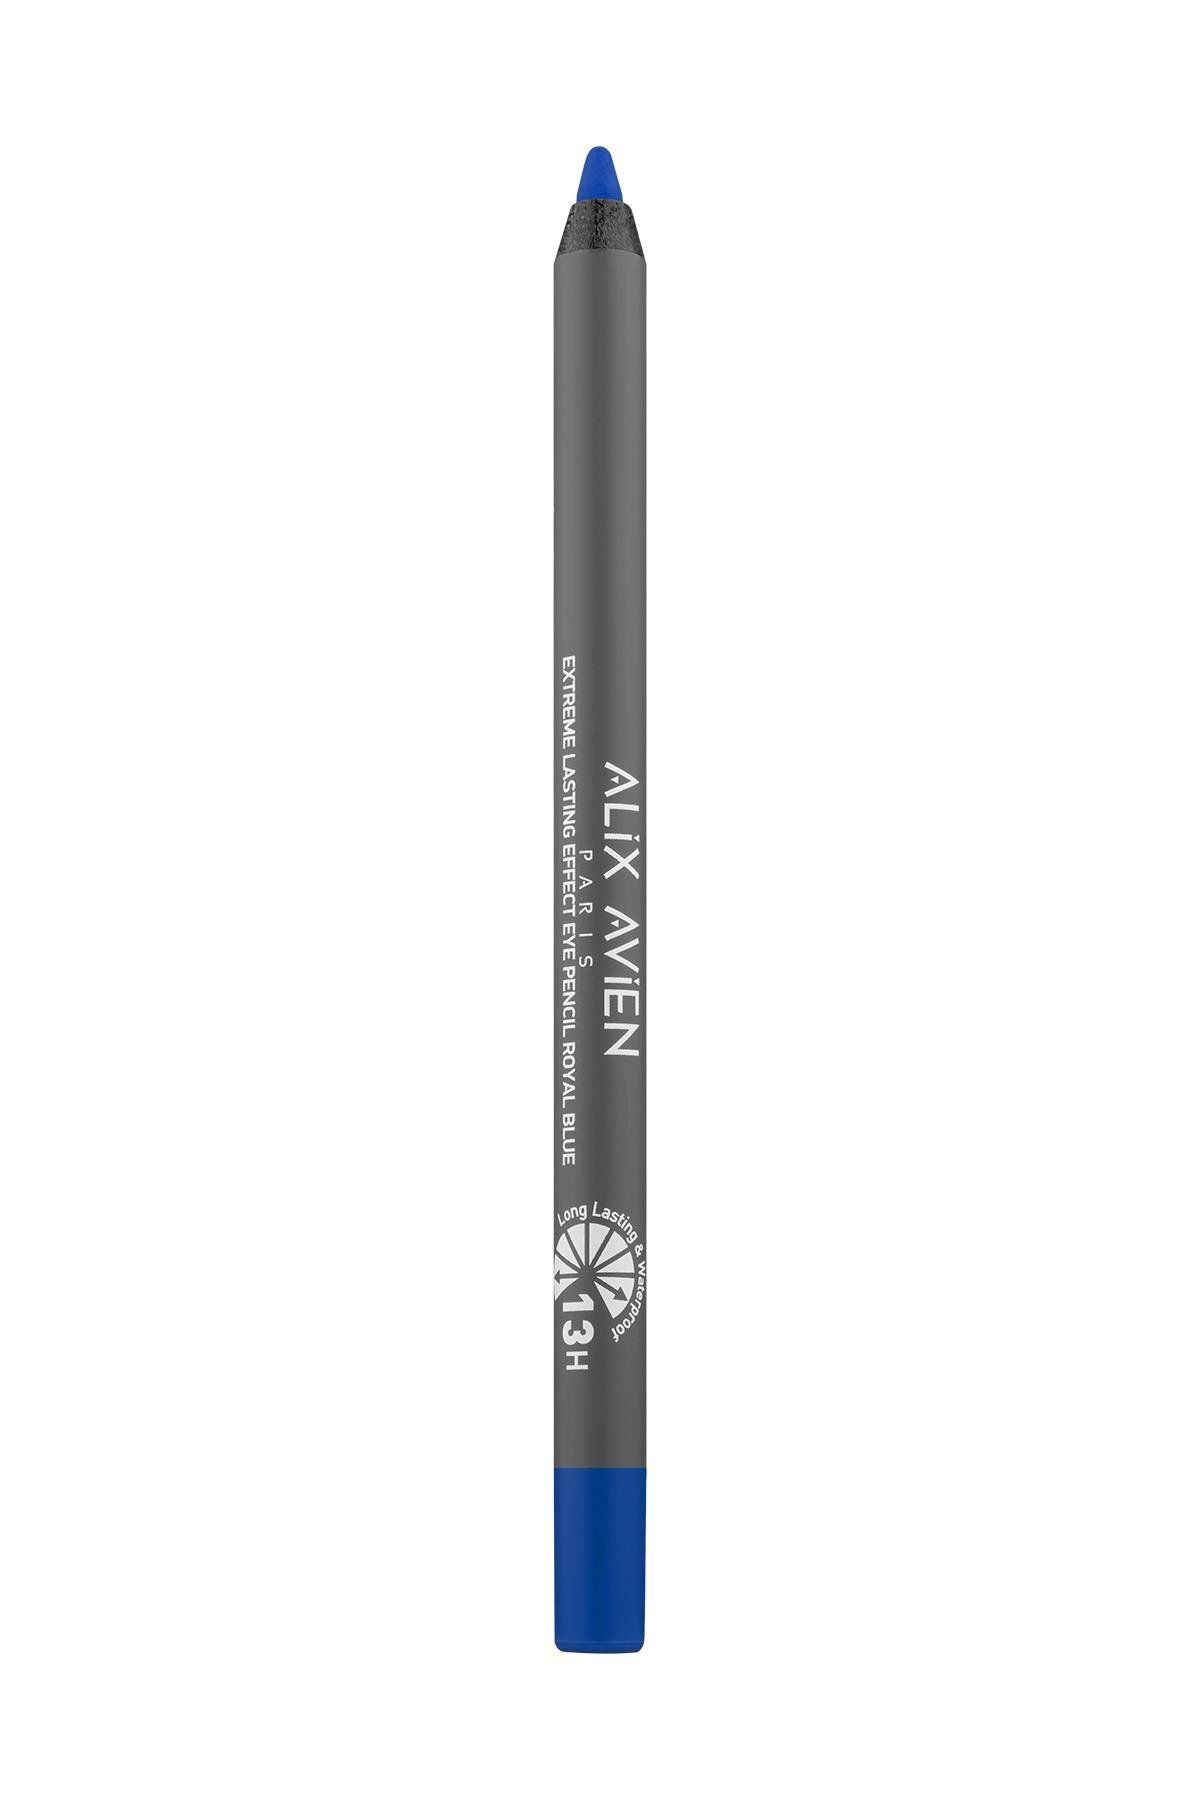 Alix Avien Suya Dayanıklı Mavi Göz Kalemi - 13 Saat Kalıcı Etki - Extreme Lasting Effect Eye Pencil Royal Blue